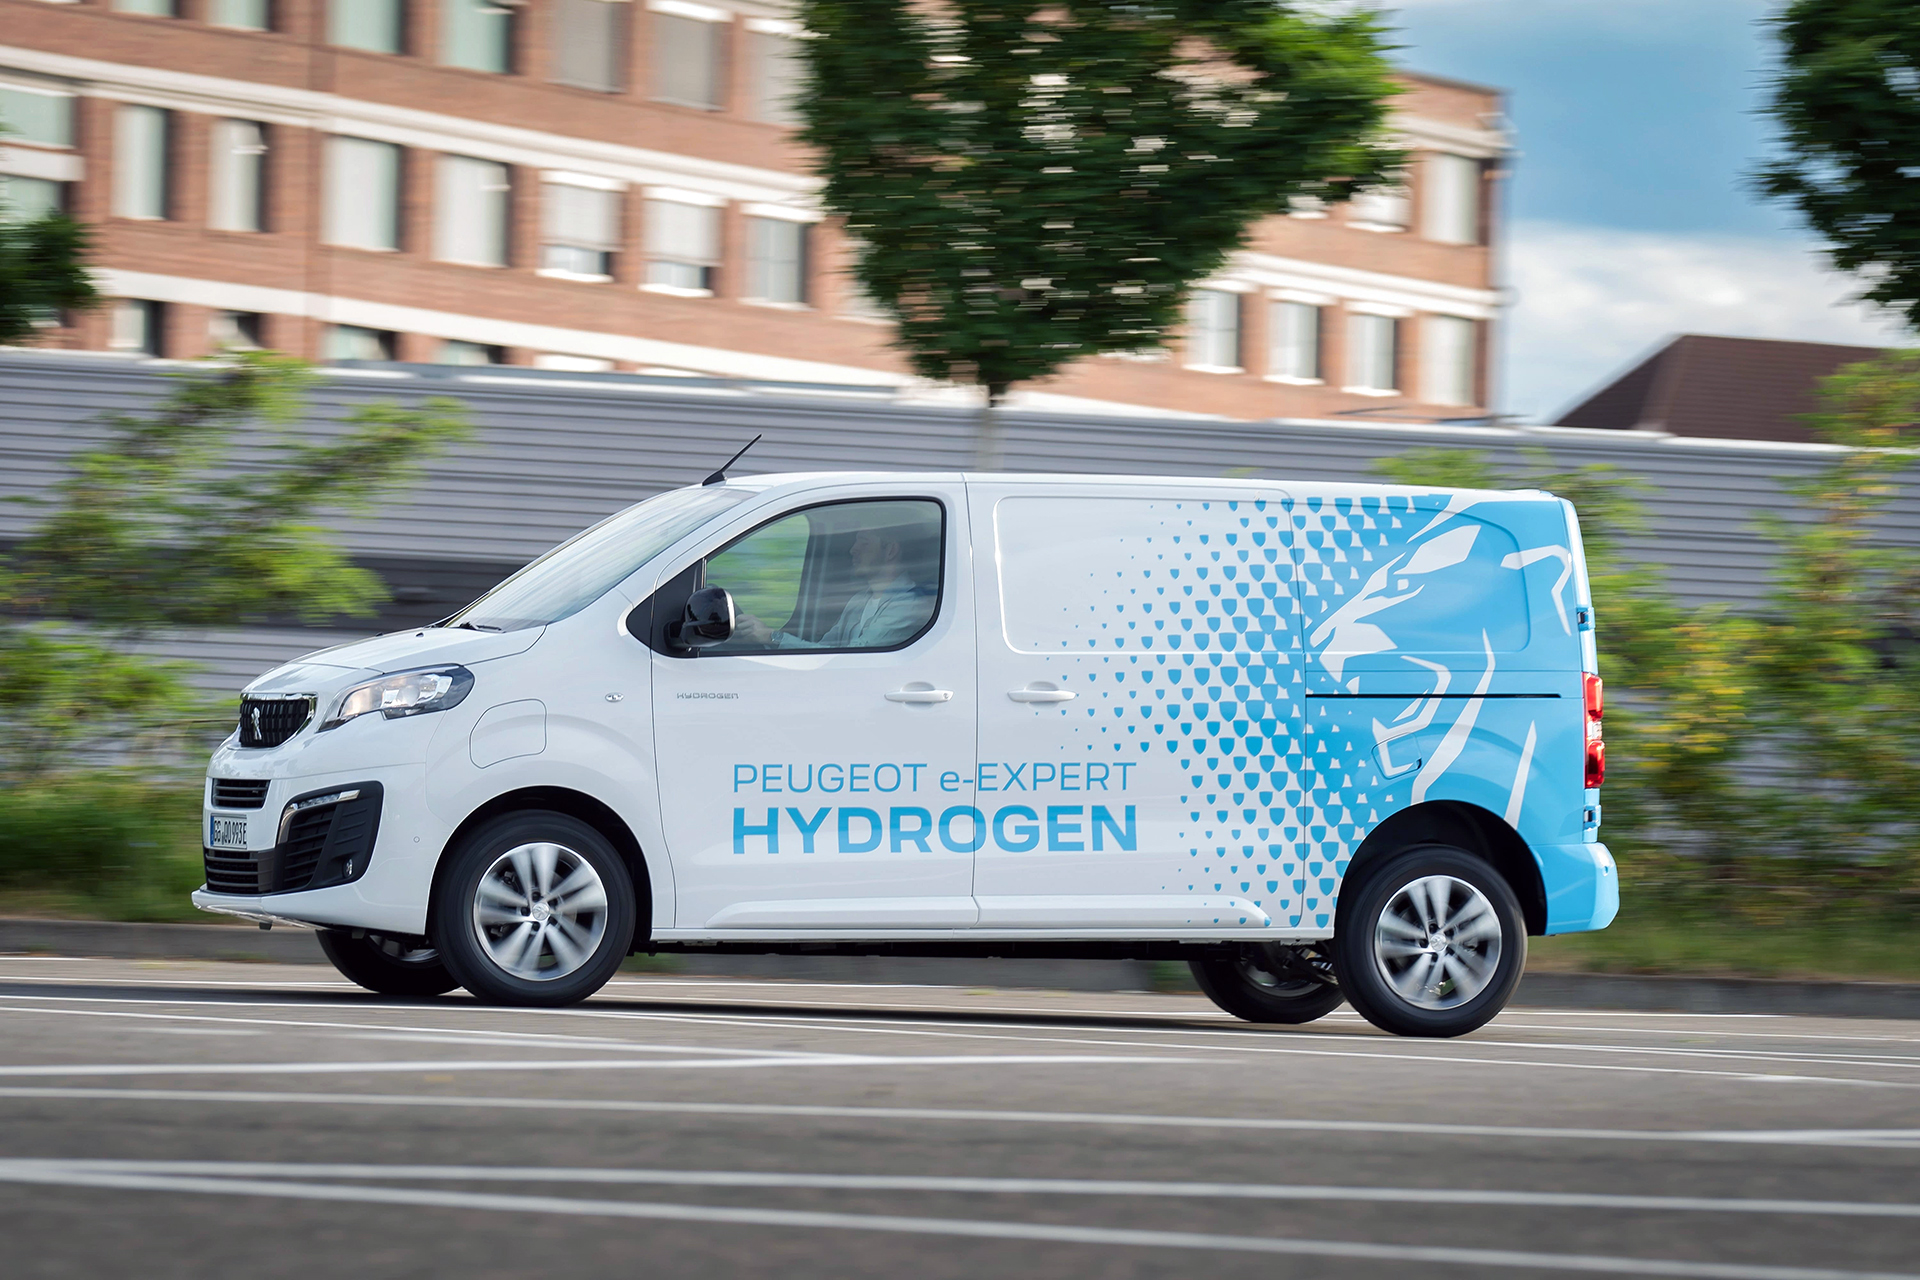 Nowy Peugeot E-expert hydrogen - bez kompromisów